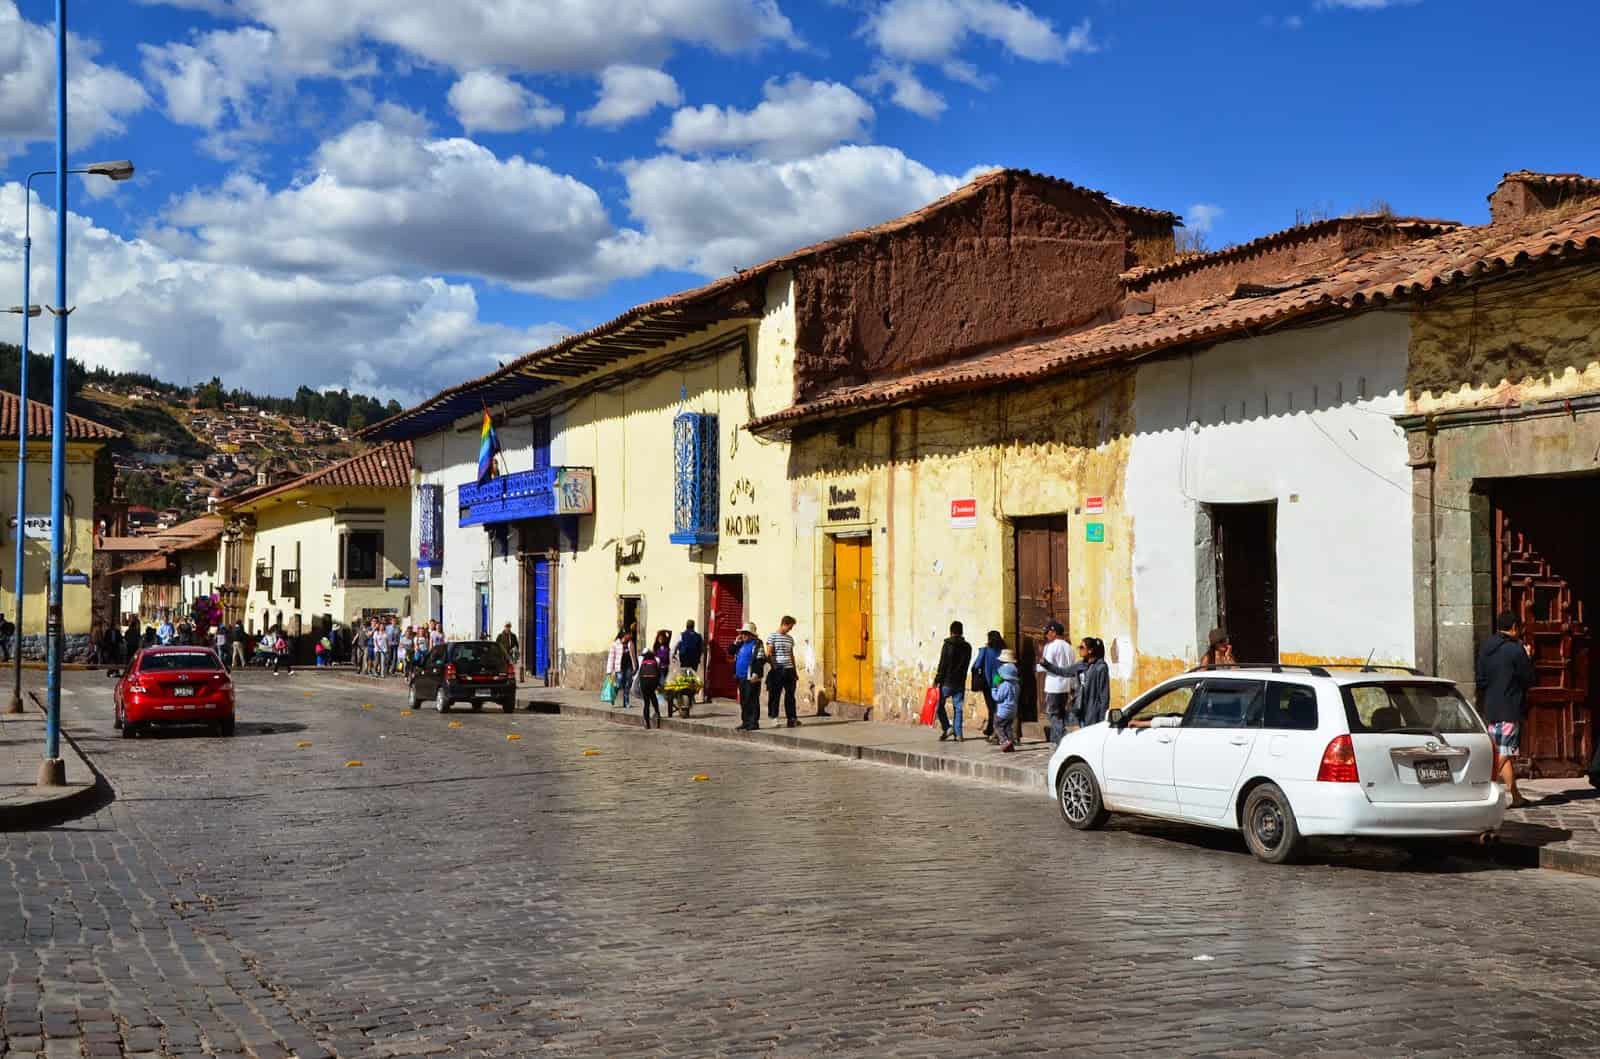 A street in Cusco, Peru